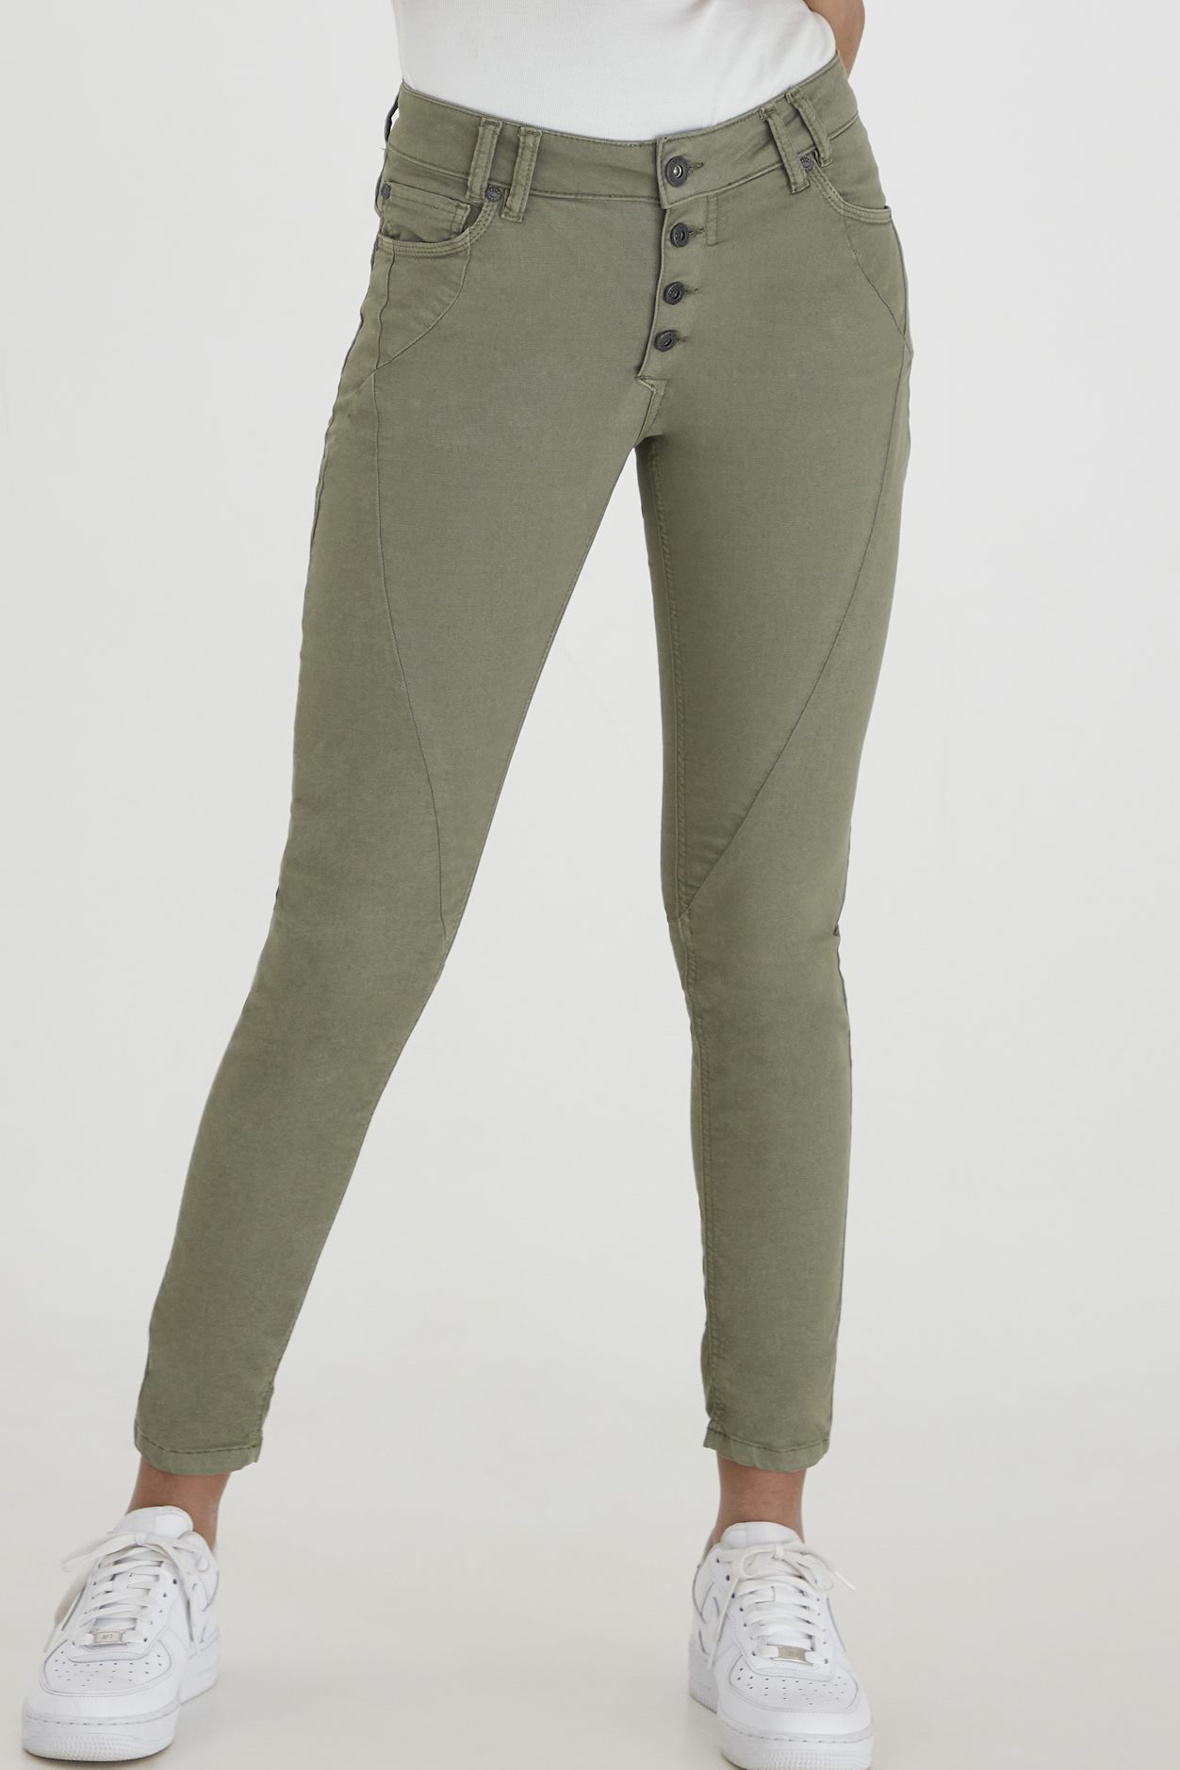 Dekorative Sui stærk Pulz pz Rosita Pants Capri - army grønne denim jeans - kvinde - Hos Lohse